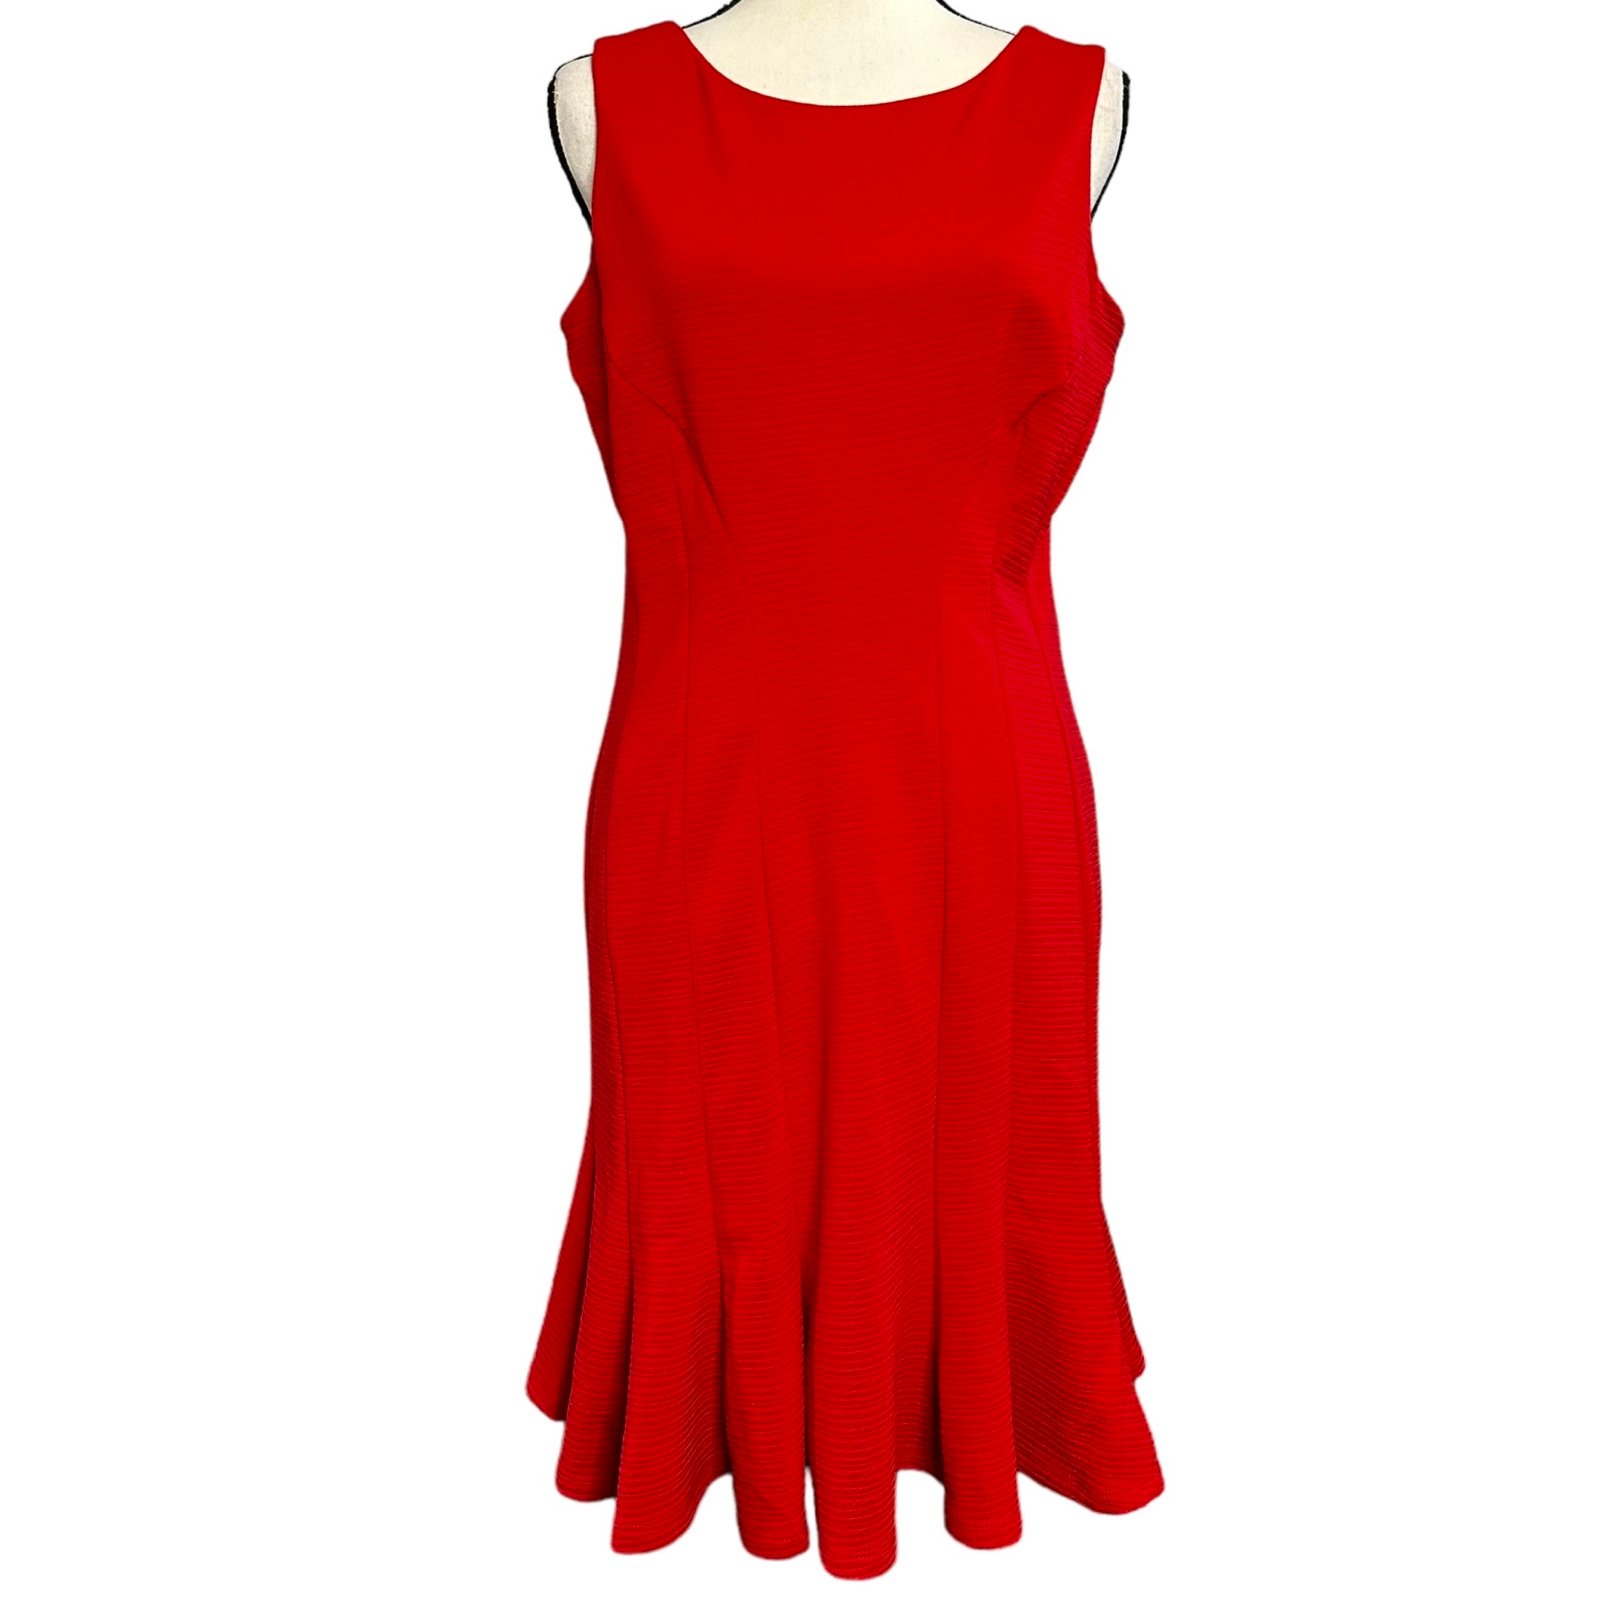 Gabby Skye Dress 8 Red Textured Midi 4YM7oYlKw